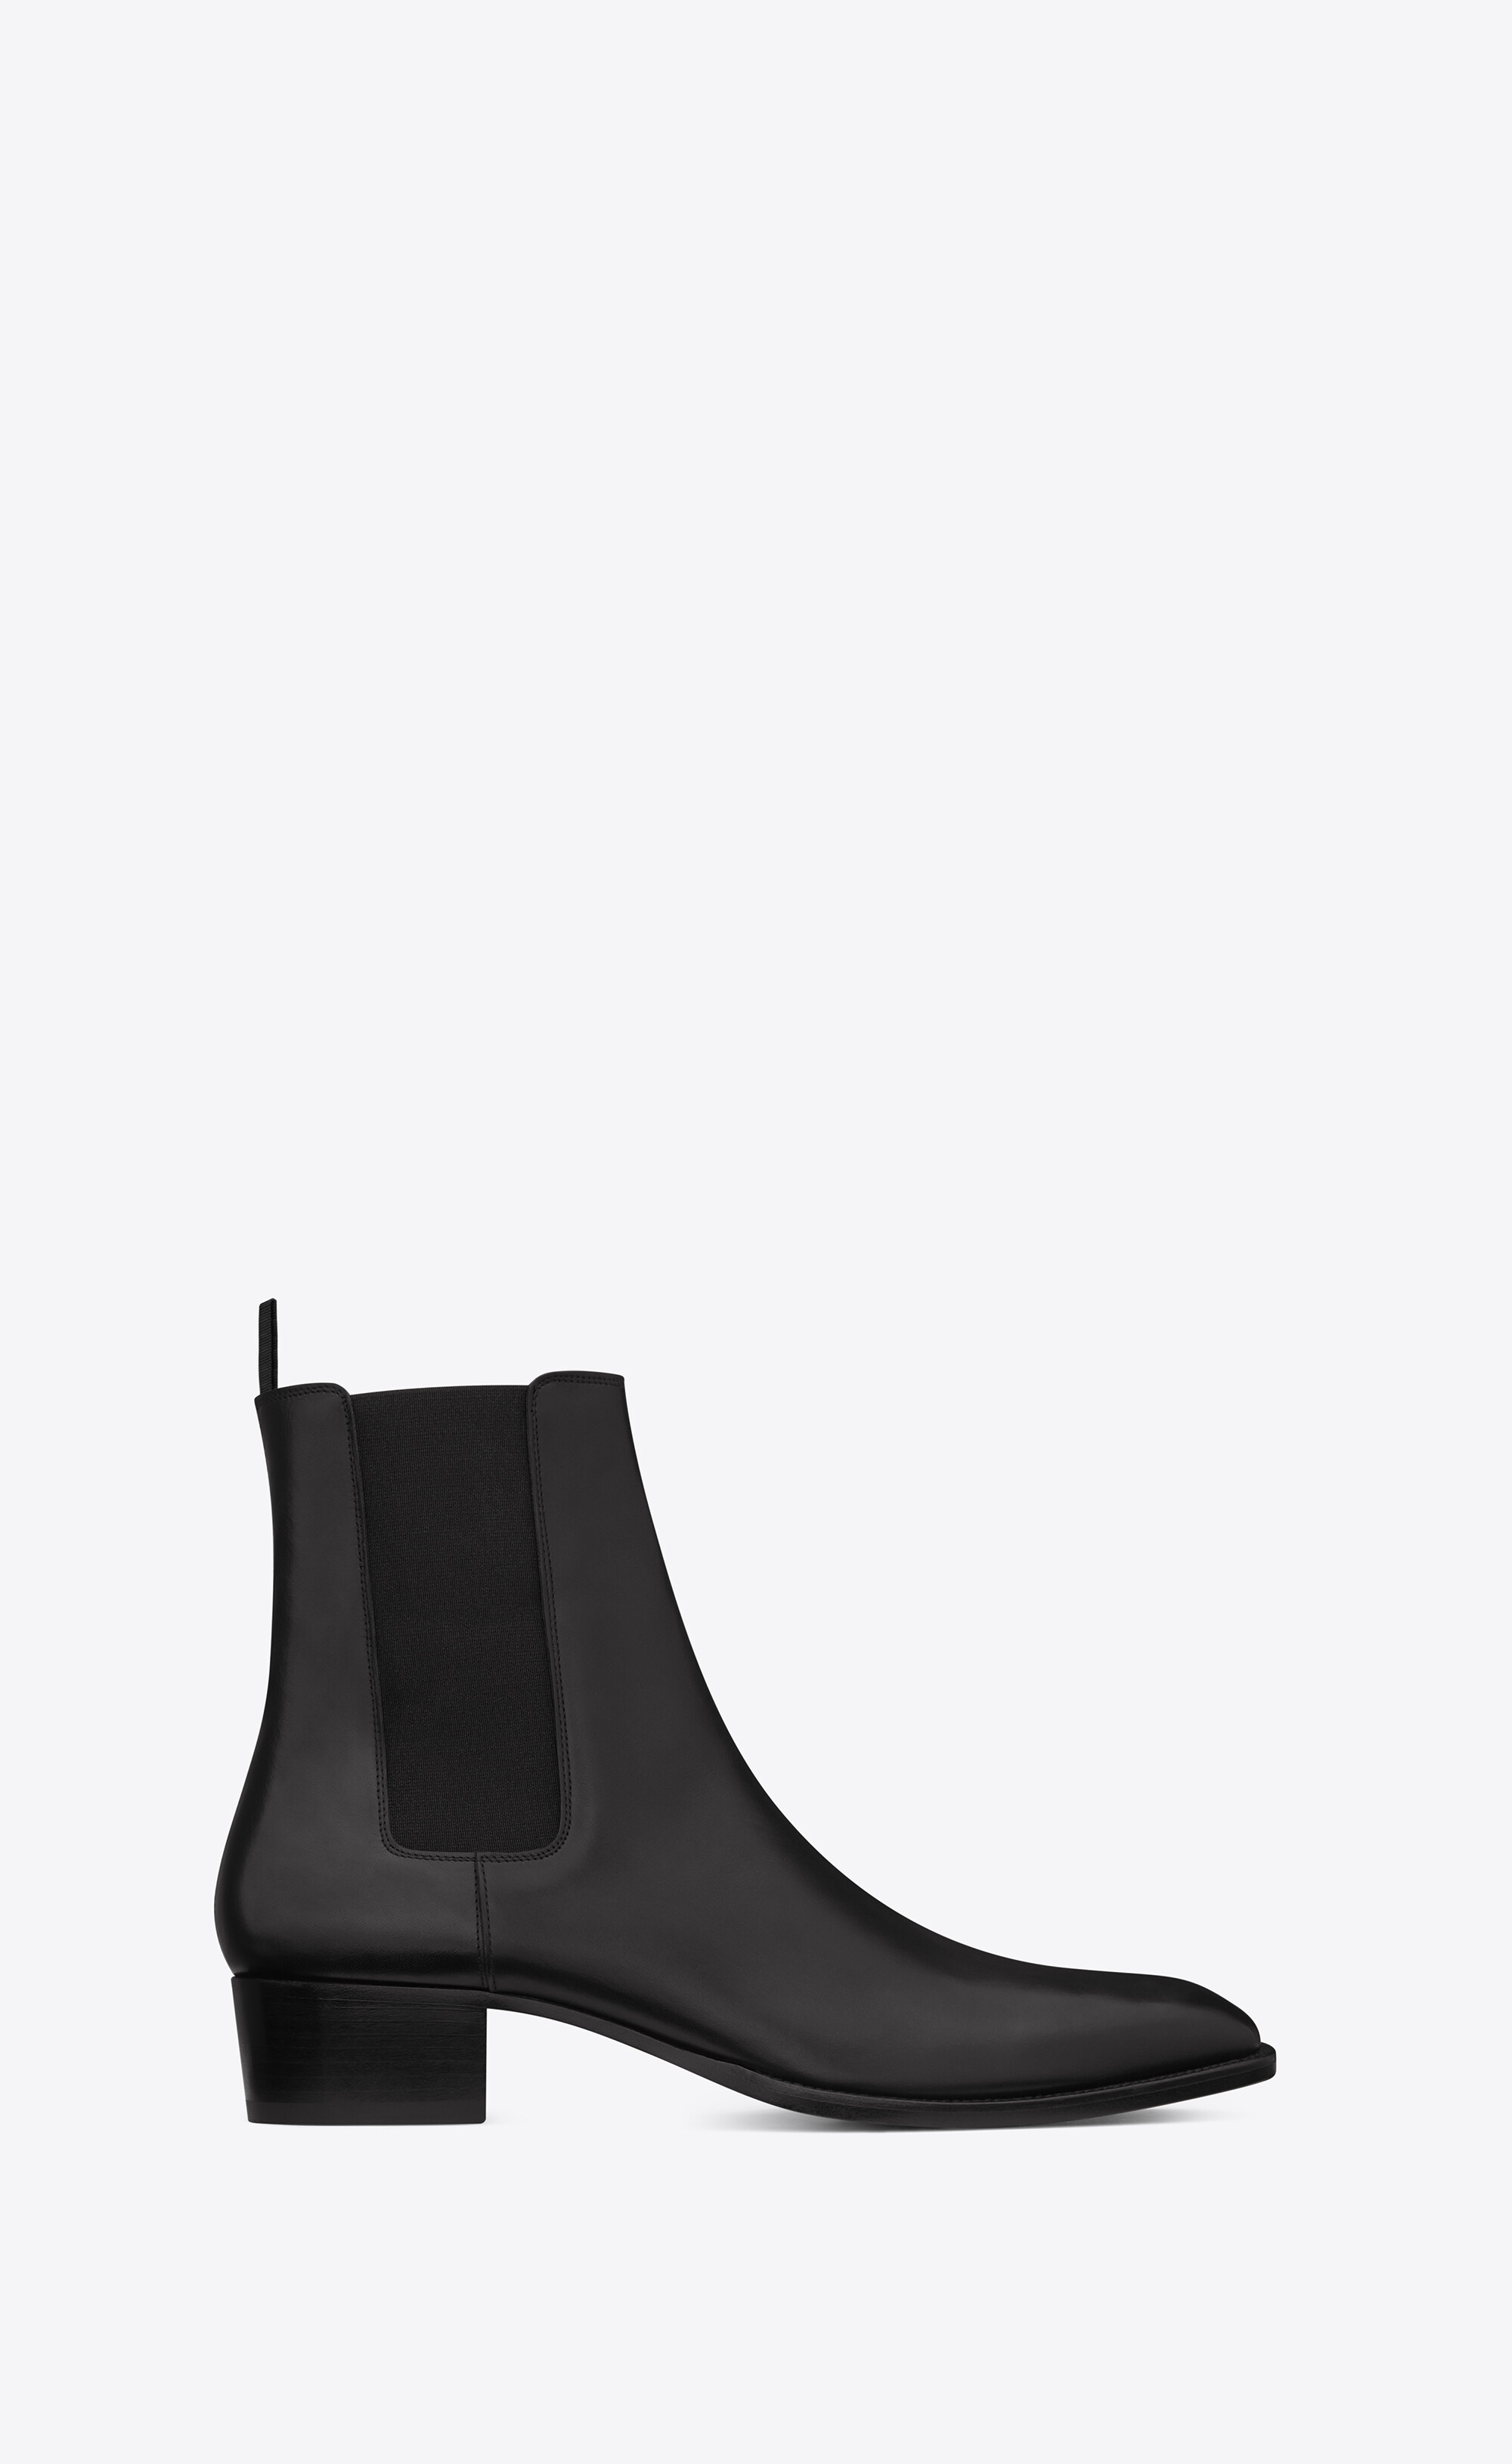 Saint Laurent Wyatt Patent-leather Boots - Men - Black Boots - EU 42